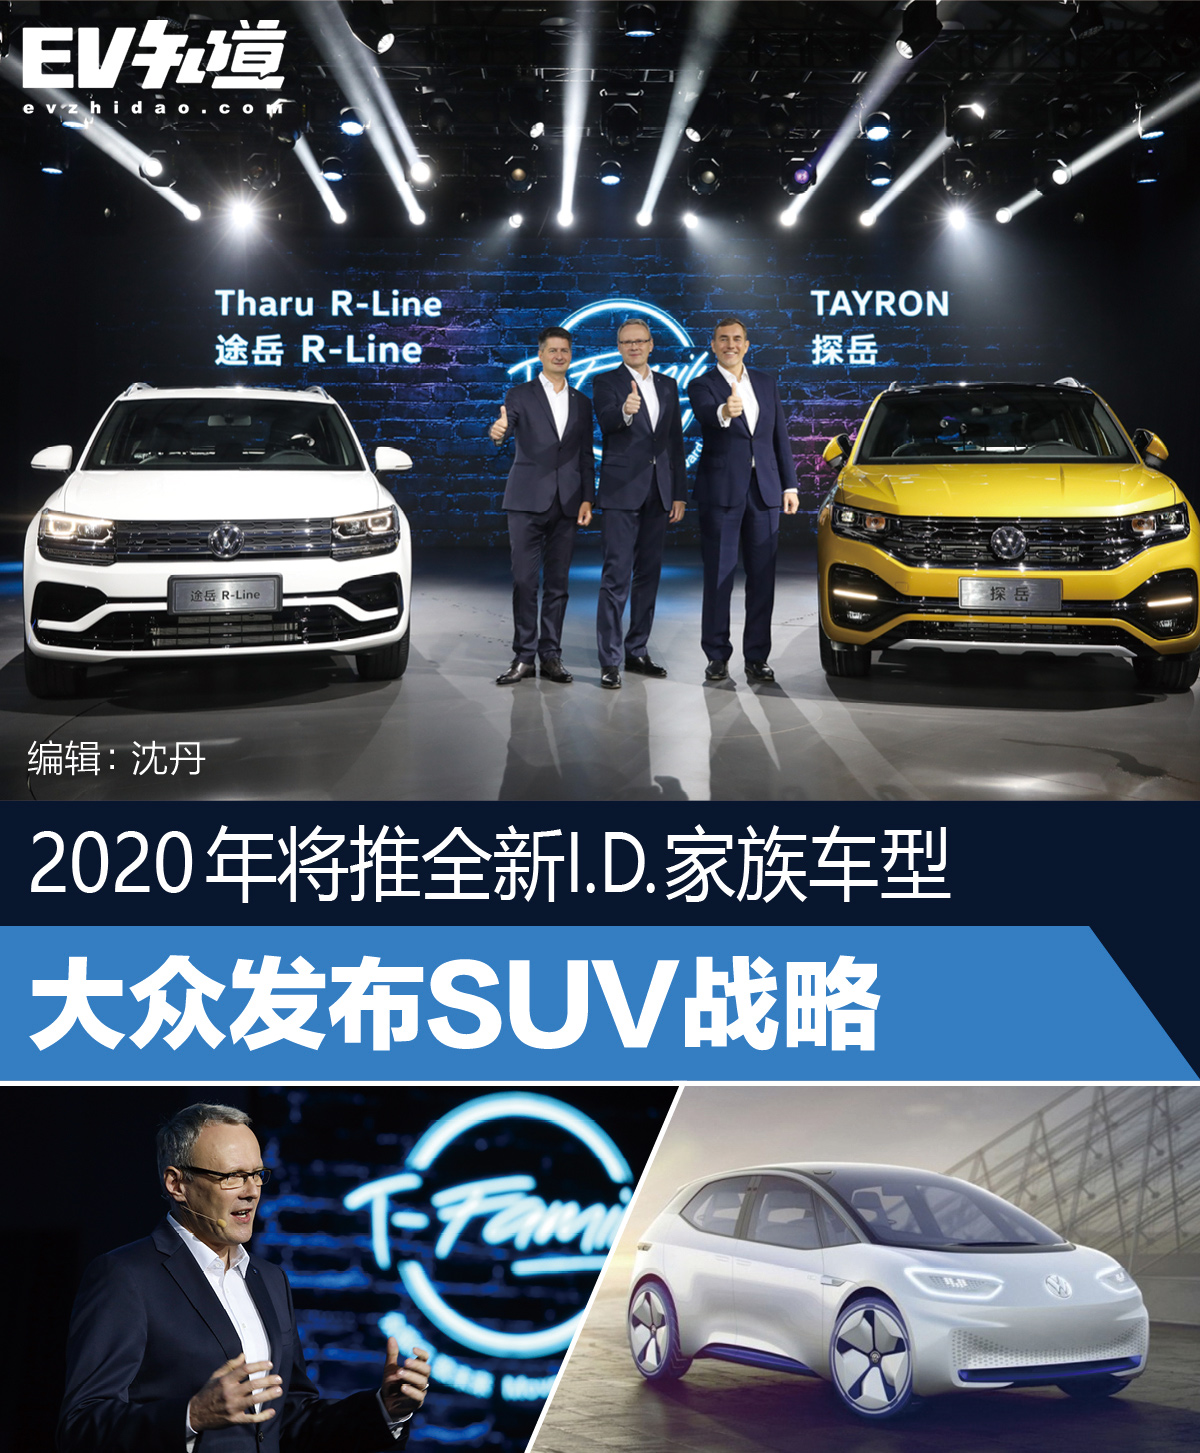 2020年将推全新I.D.家族车型 大众发布SUV战略